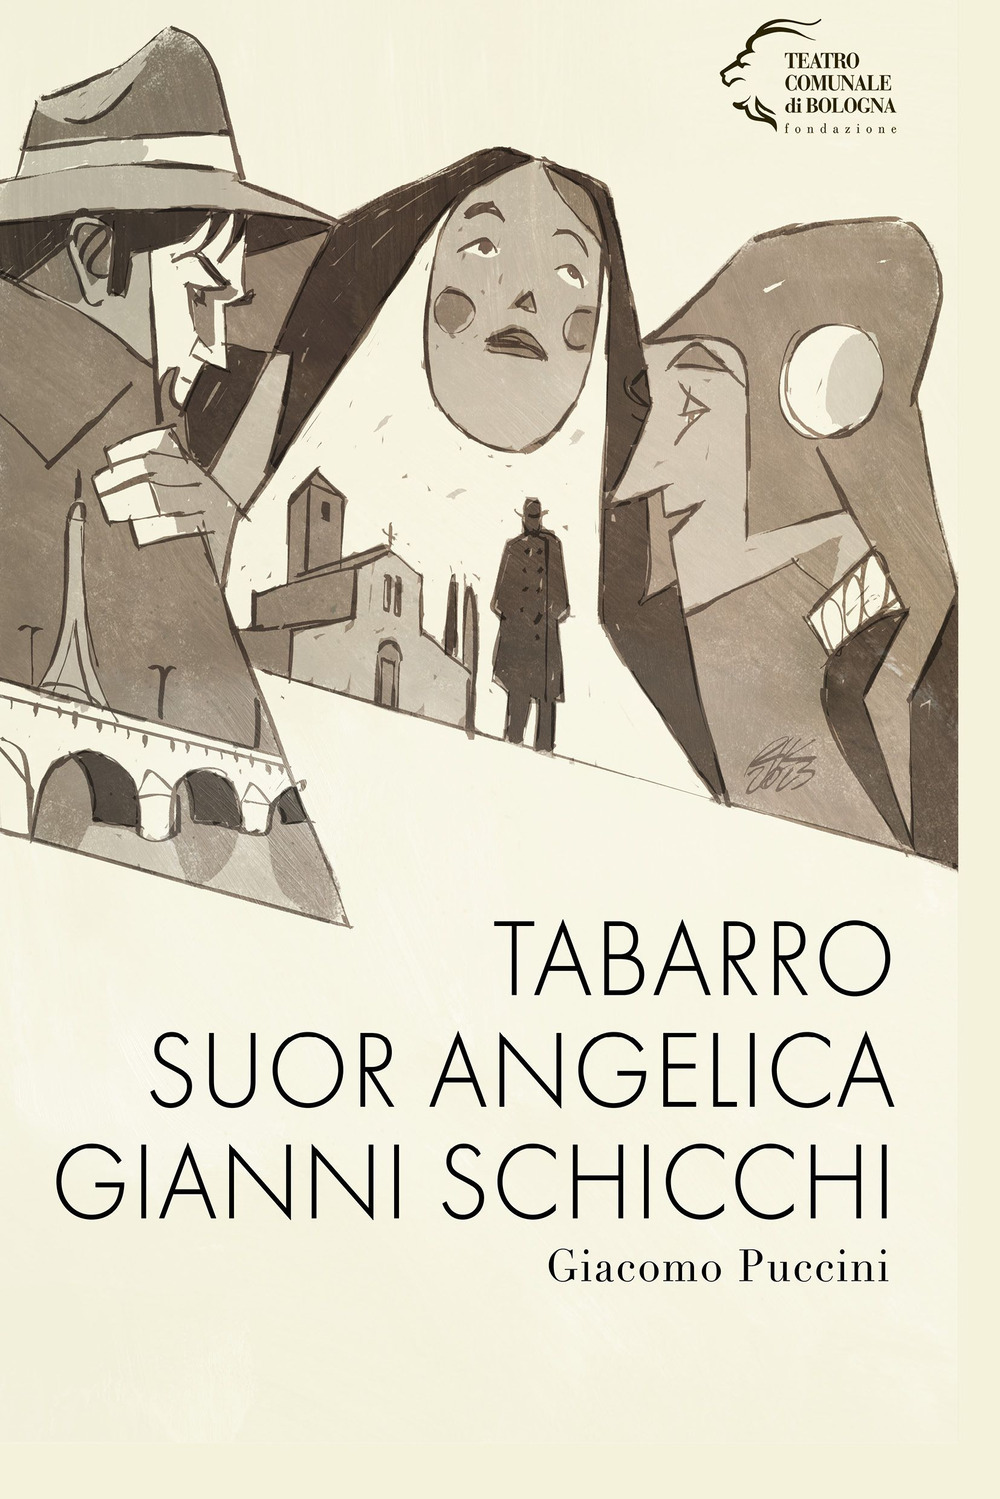 Tabarro-Suor Angelica-Gianni Schicchi